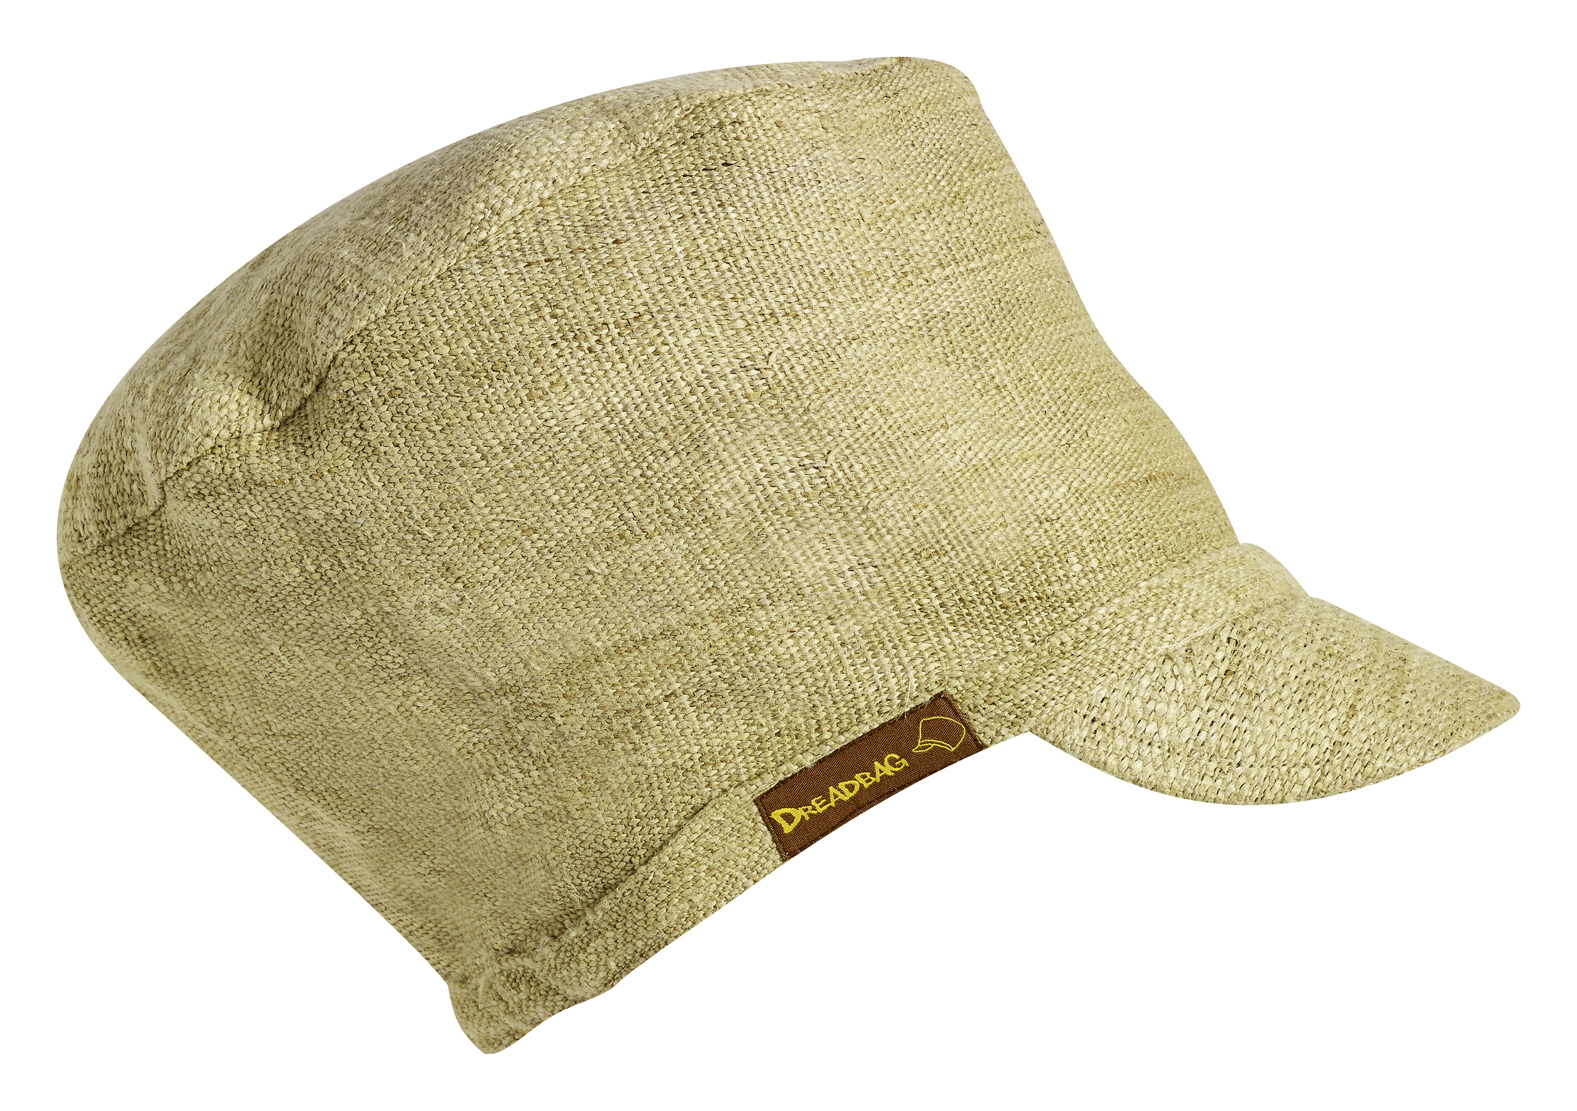 Dreadbag de cânhamo - O chapéu de cânhamo natural